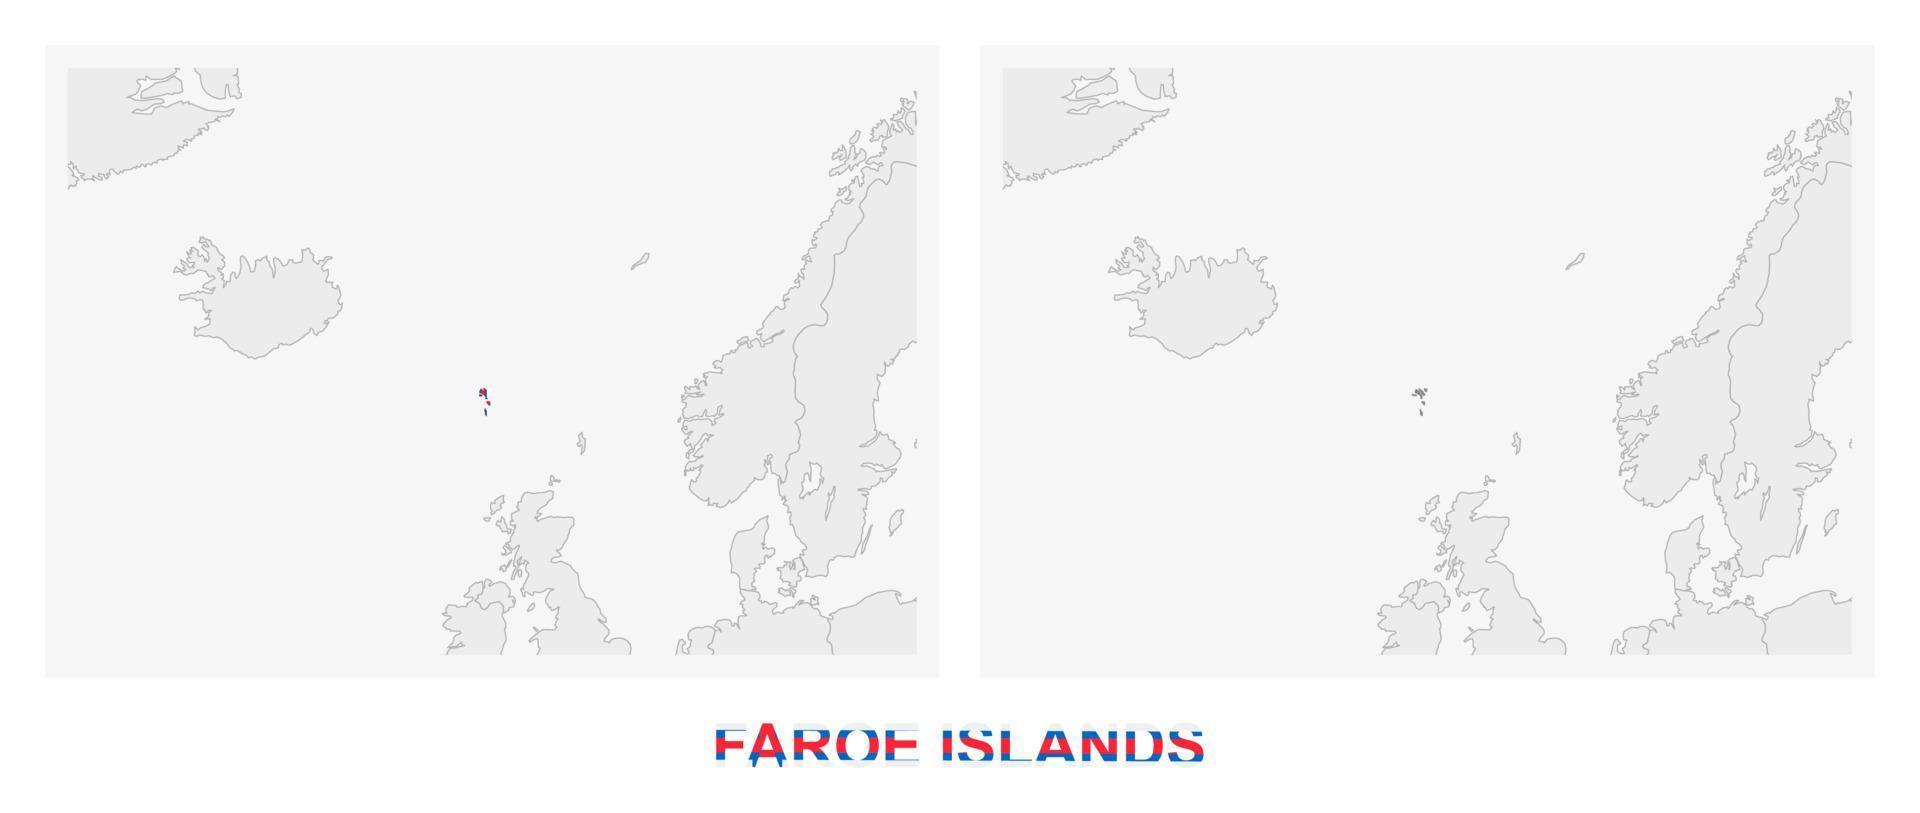 dos versiones del mapa de islas feroe, con la bandera de islas feroe y resaltada en gris oscuro. vector